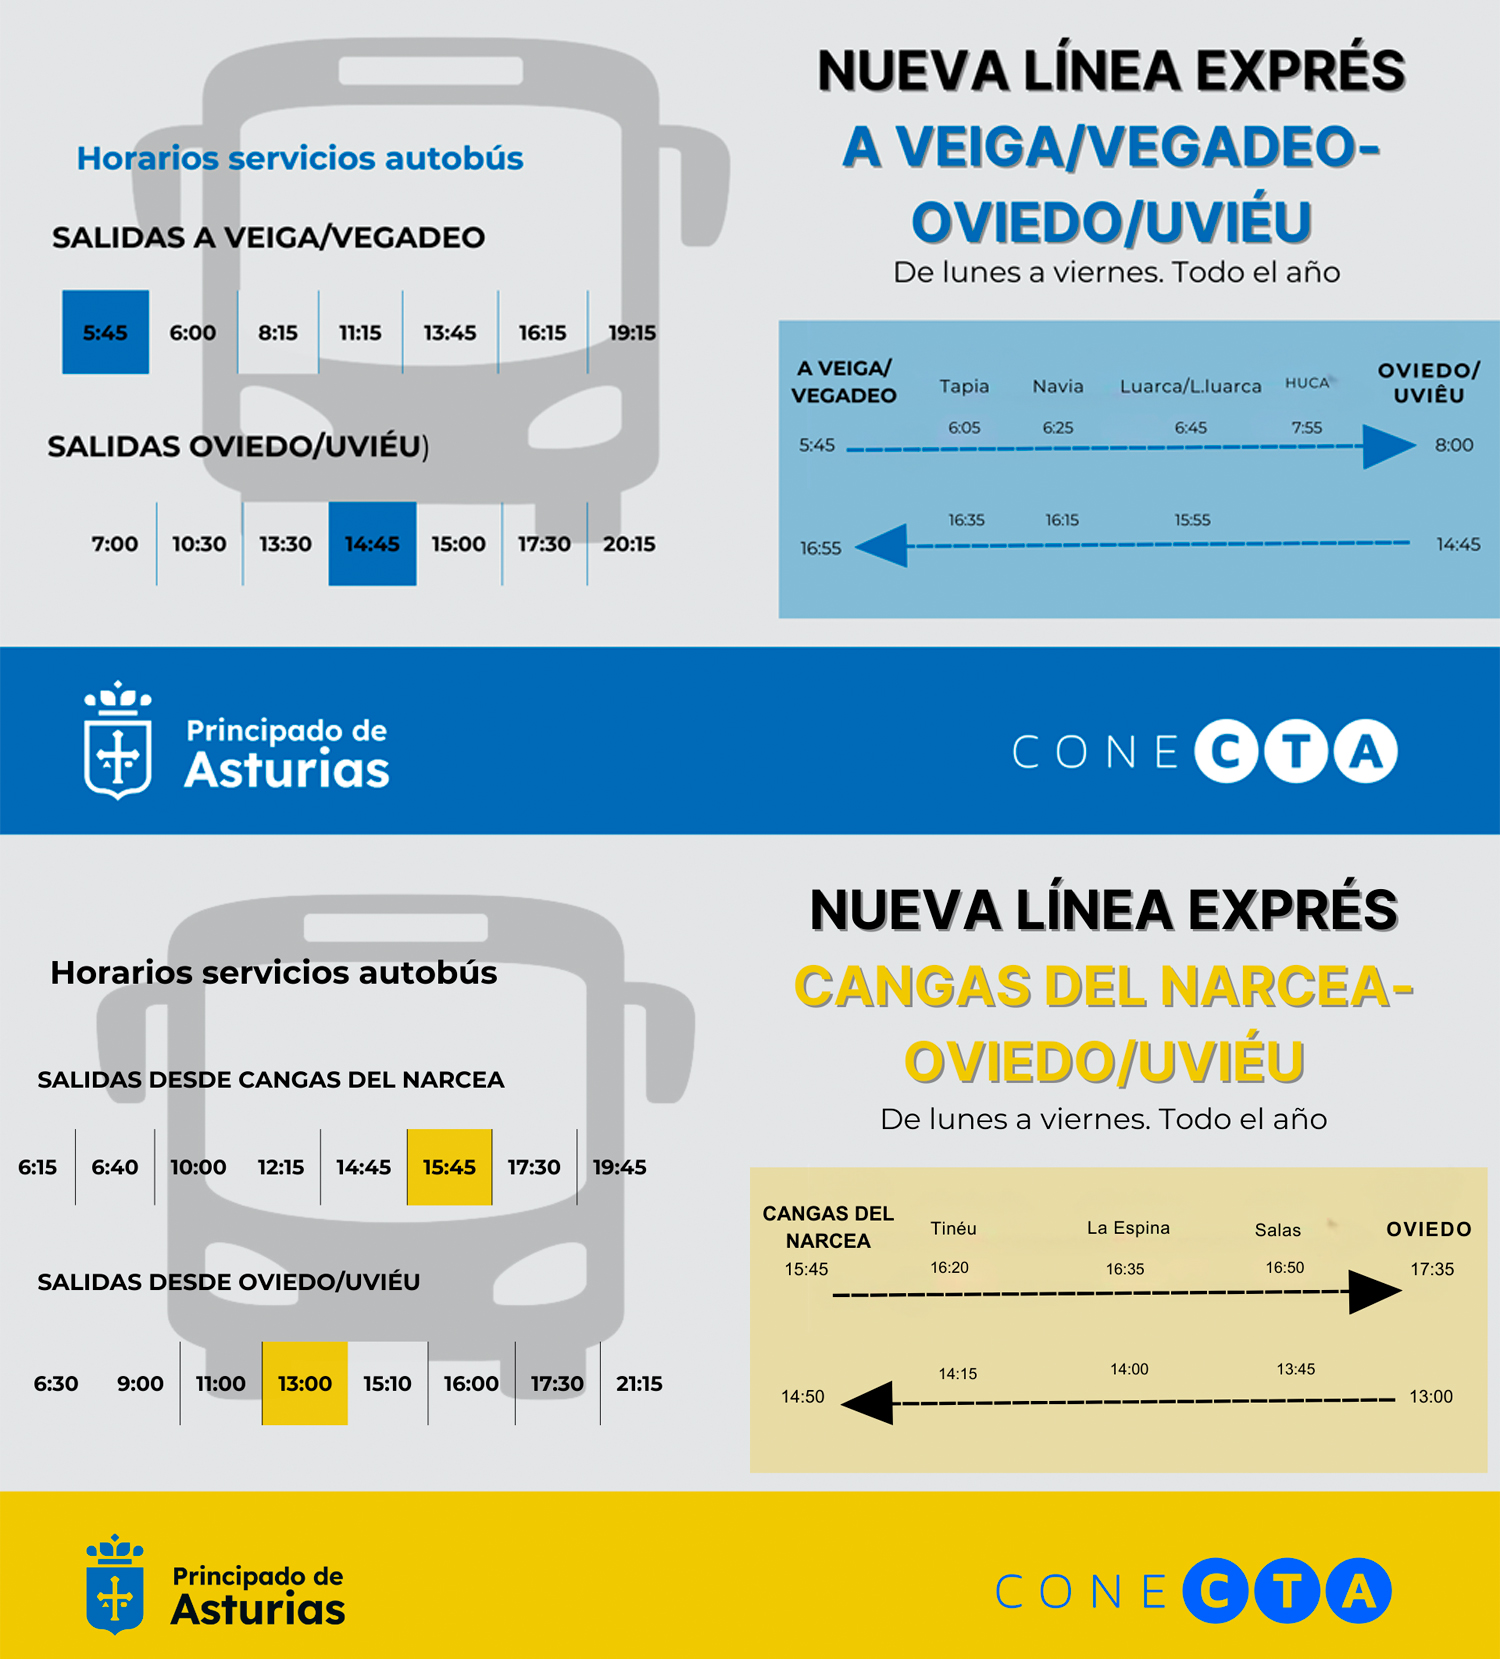 Imagen - Cangas de Narcea y A Veiga/Vegadeo contarán desde el lunes con nuevas líneas exprés de autobús a Oviedo/Uviéu